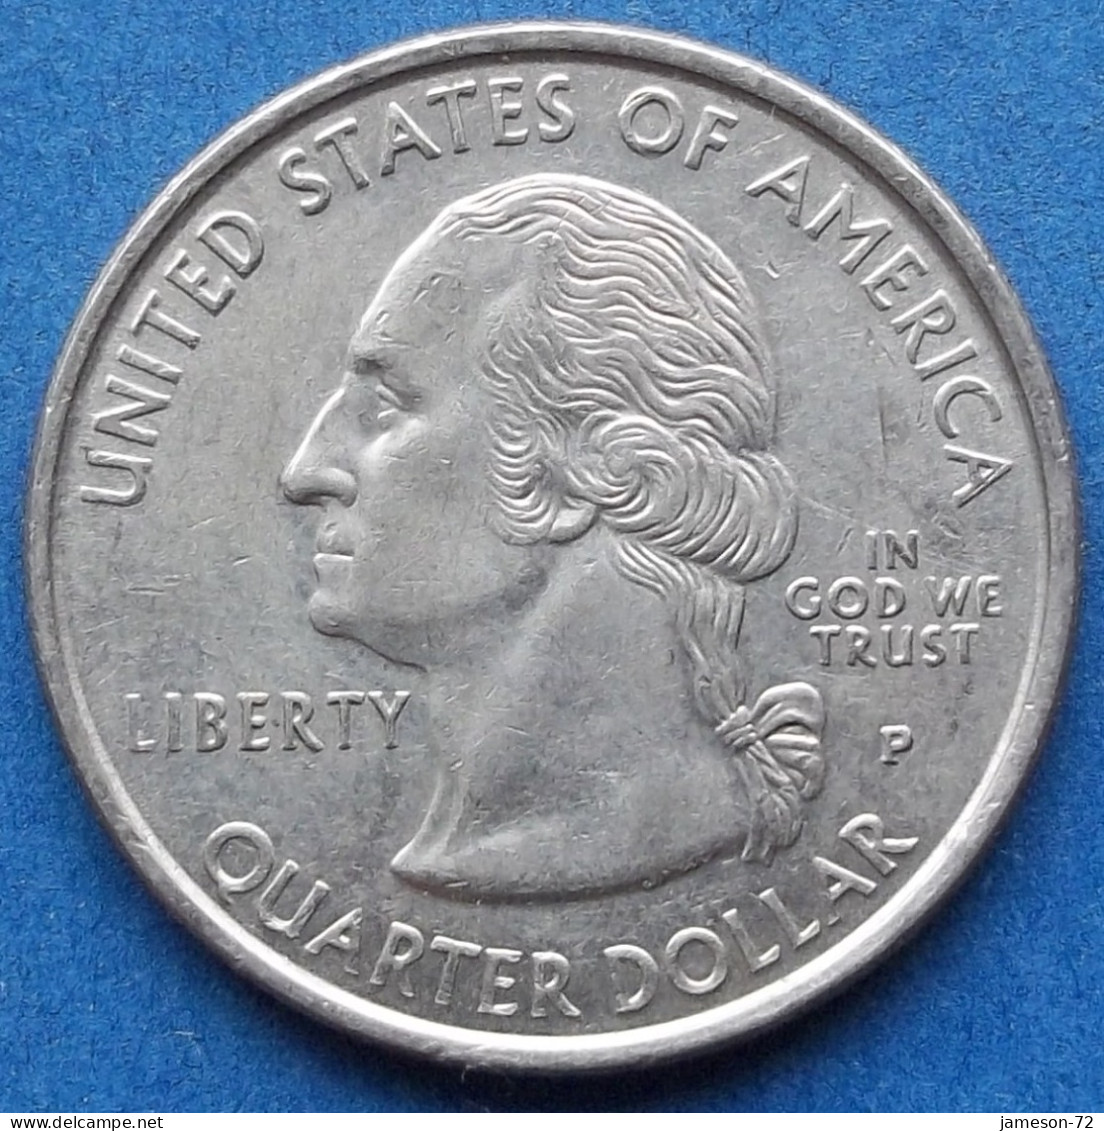 USA - Quarter Dollar 1999 P "Pennsylvania" KM# 294 - Edelweiss Coins - 1999-2009: State Quarters